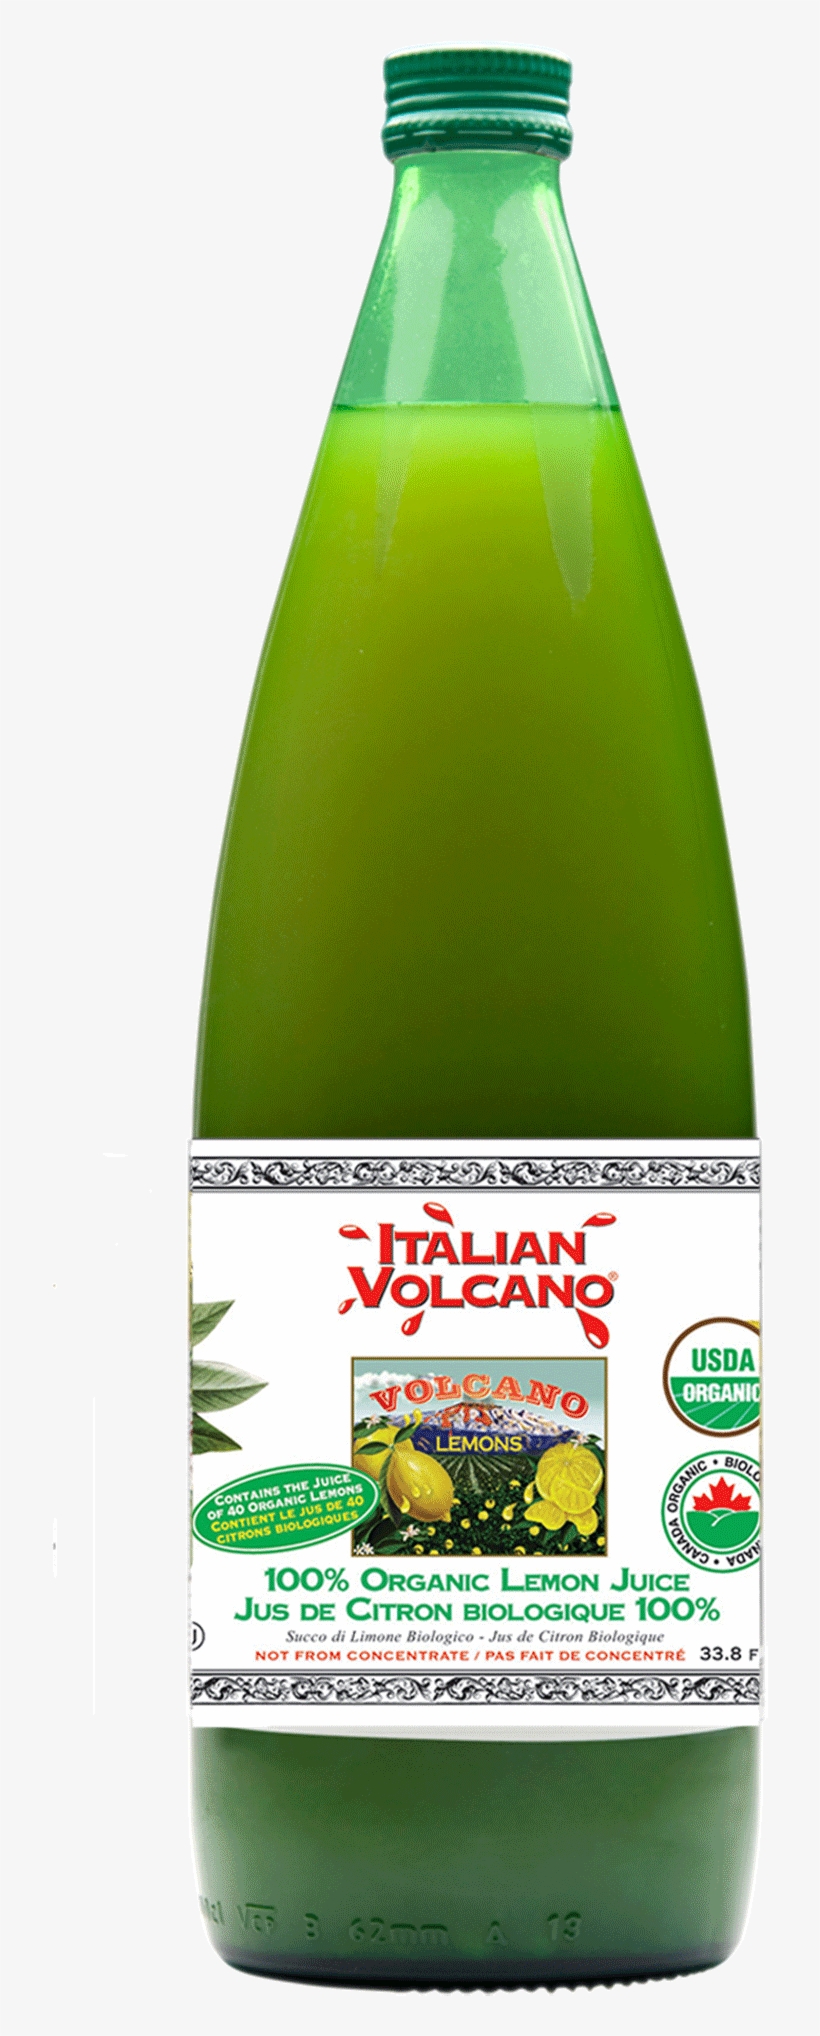 Organic Volcano Lemon Juice, 1l - Volcano Lemon Juice - 1 L Bottle, transparent png #2451457